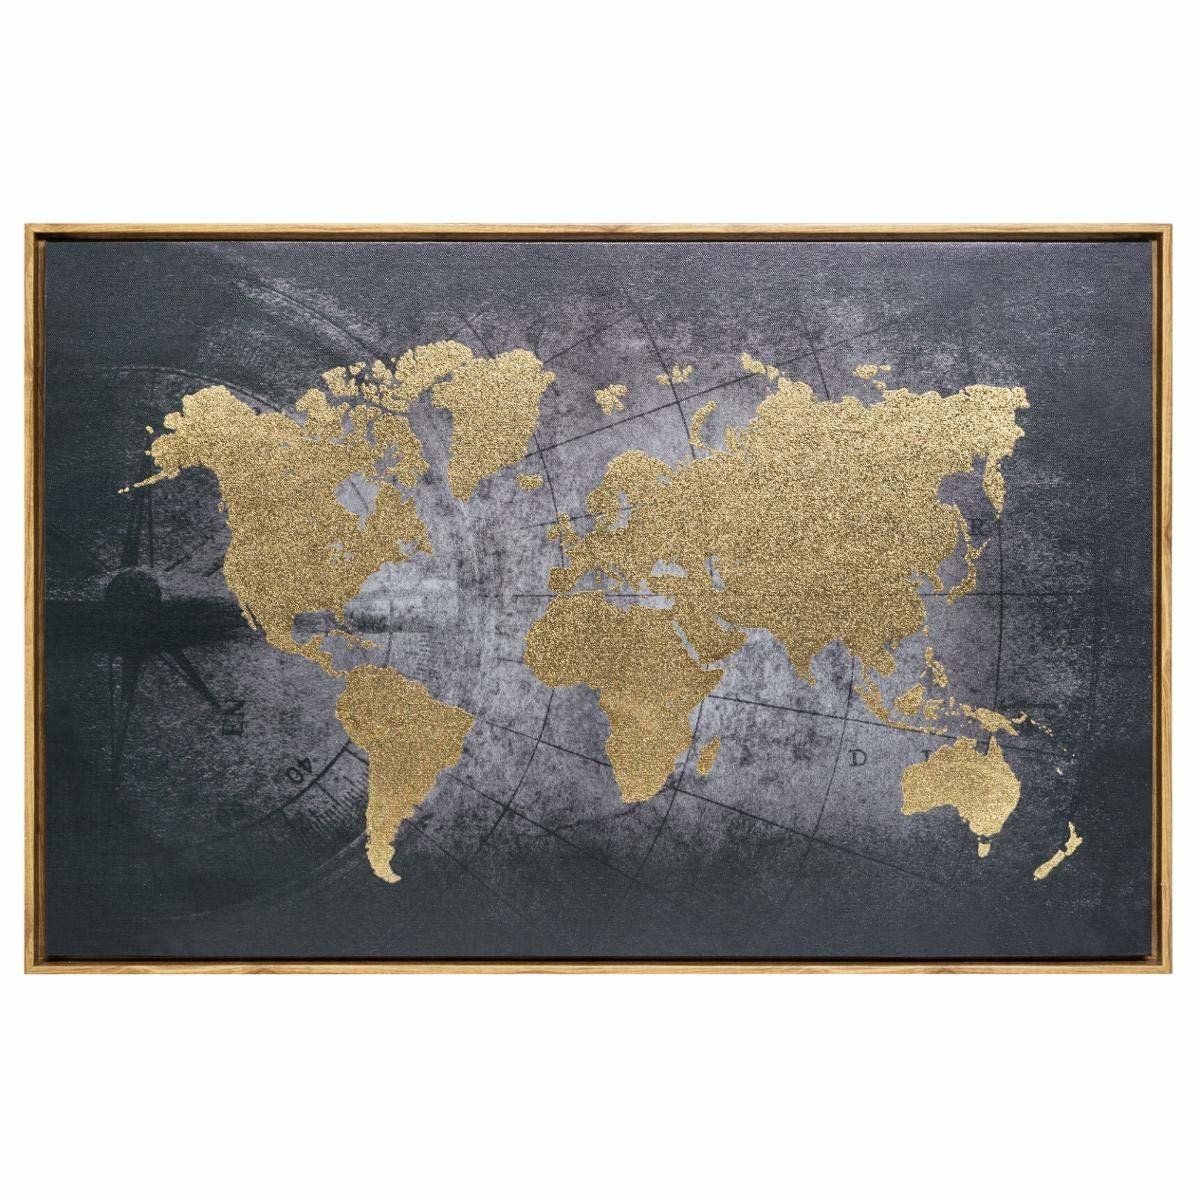 Atmosphera Světová mapa nástěnné dekorace, plátěný rám, 58 x 88 cm - EDAXO.CZ s.r.o.